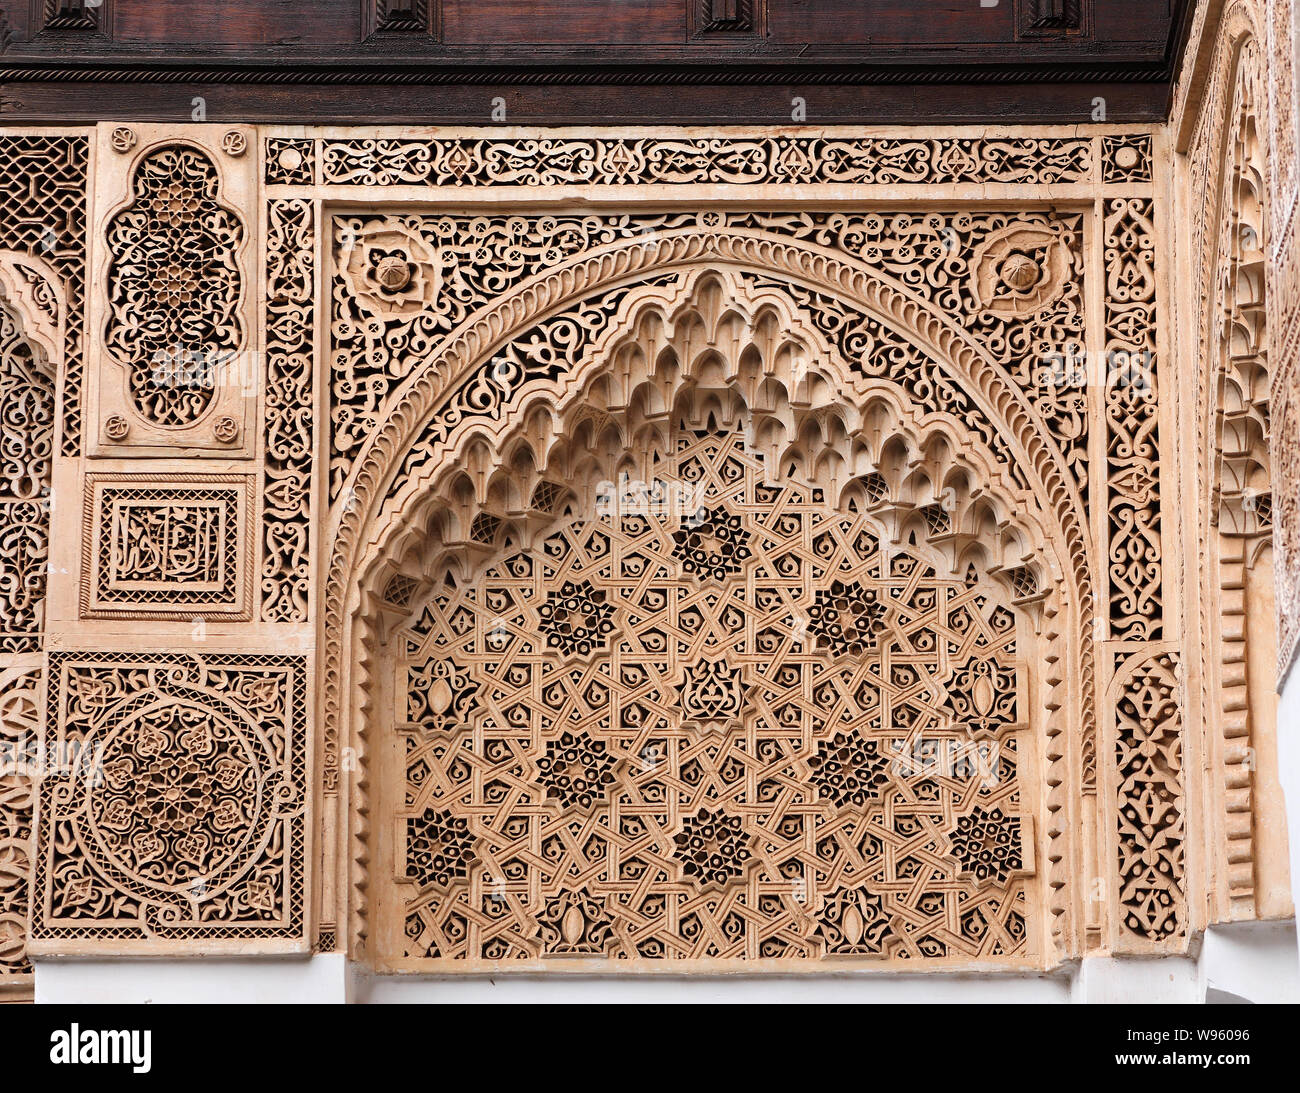 Marrakech, Marocco. Bella Arabesque archi con intricati lavori di stucco nel Palazzo Bahia, uno di Marrakesh turistica principale di icone. Sito UNESCO. Foto Stock